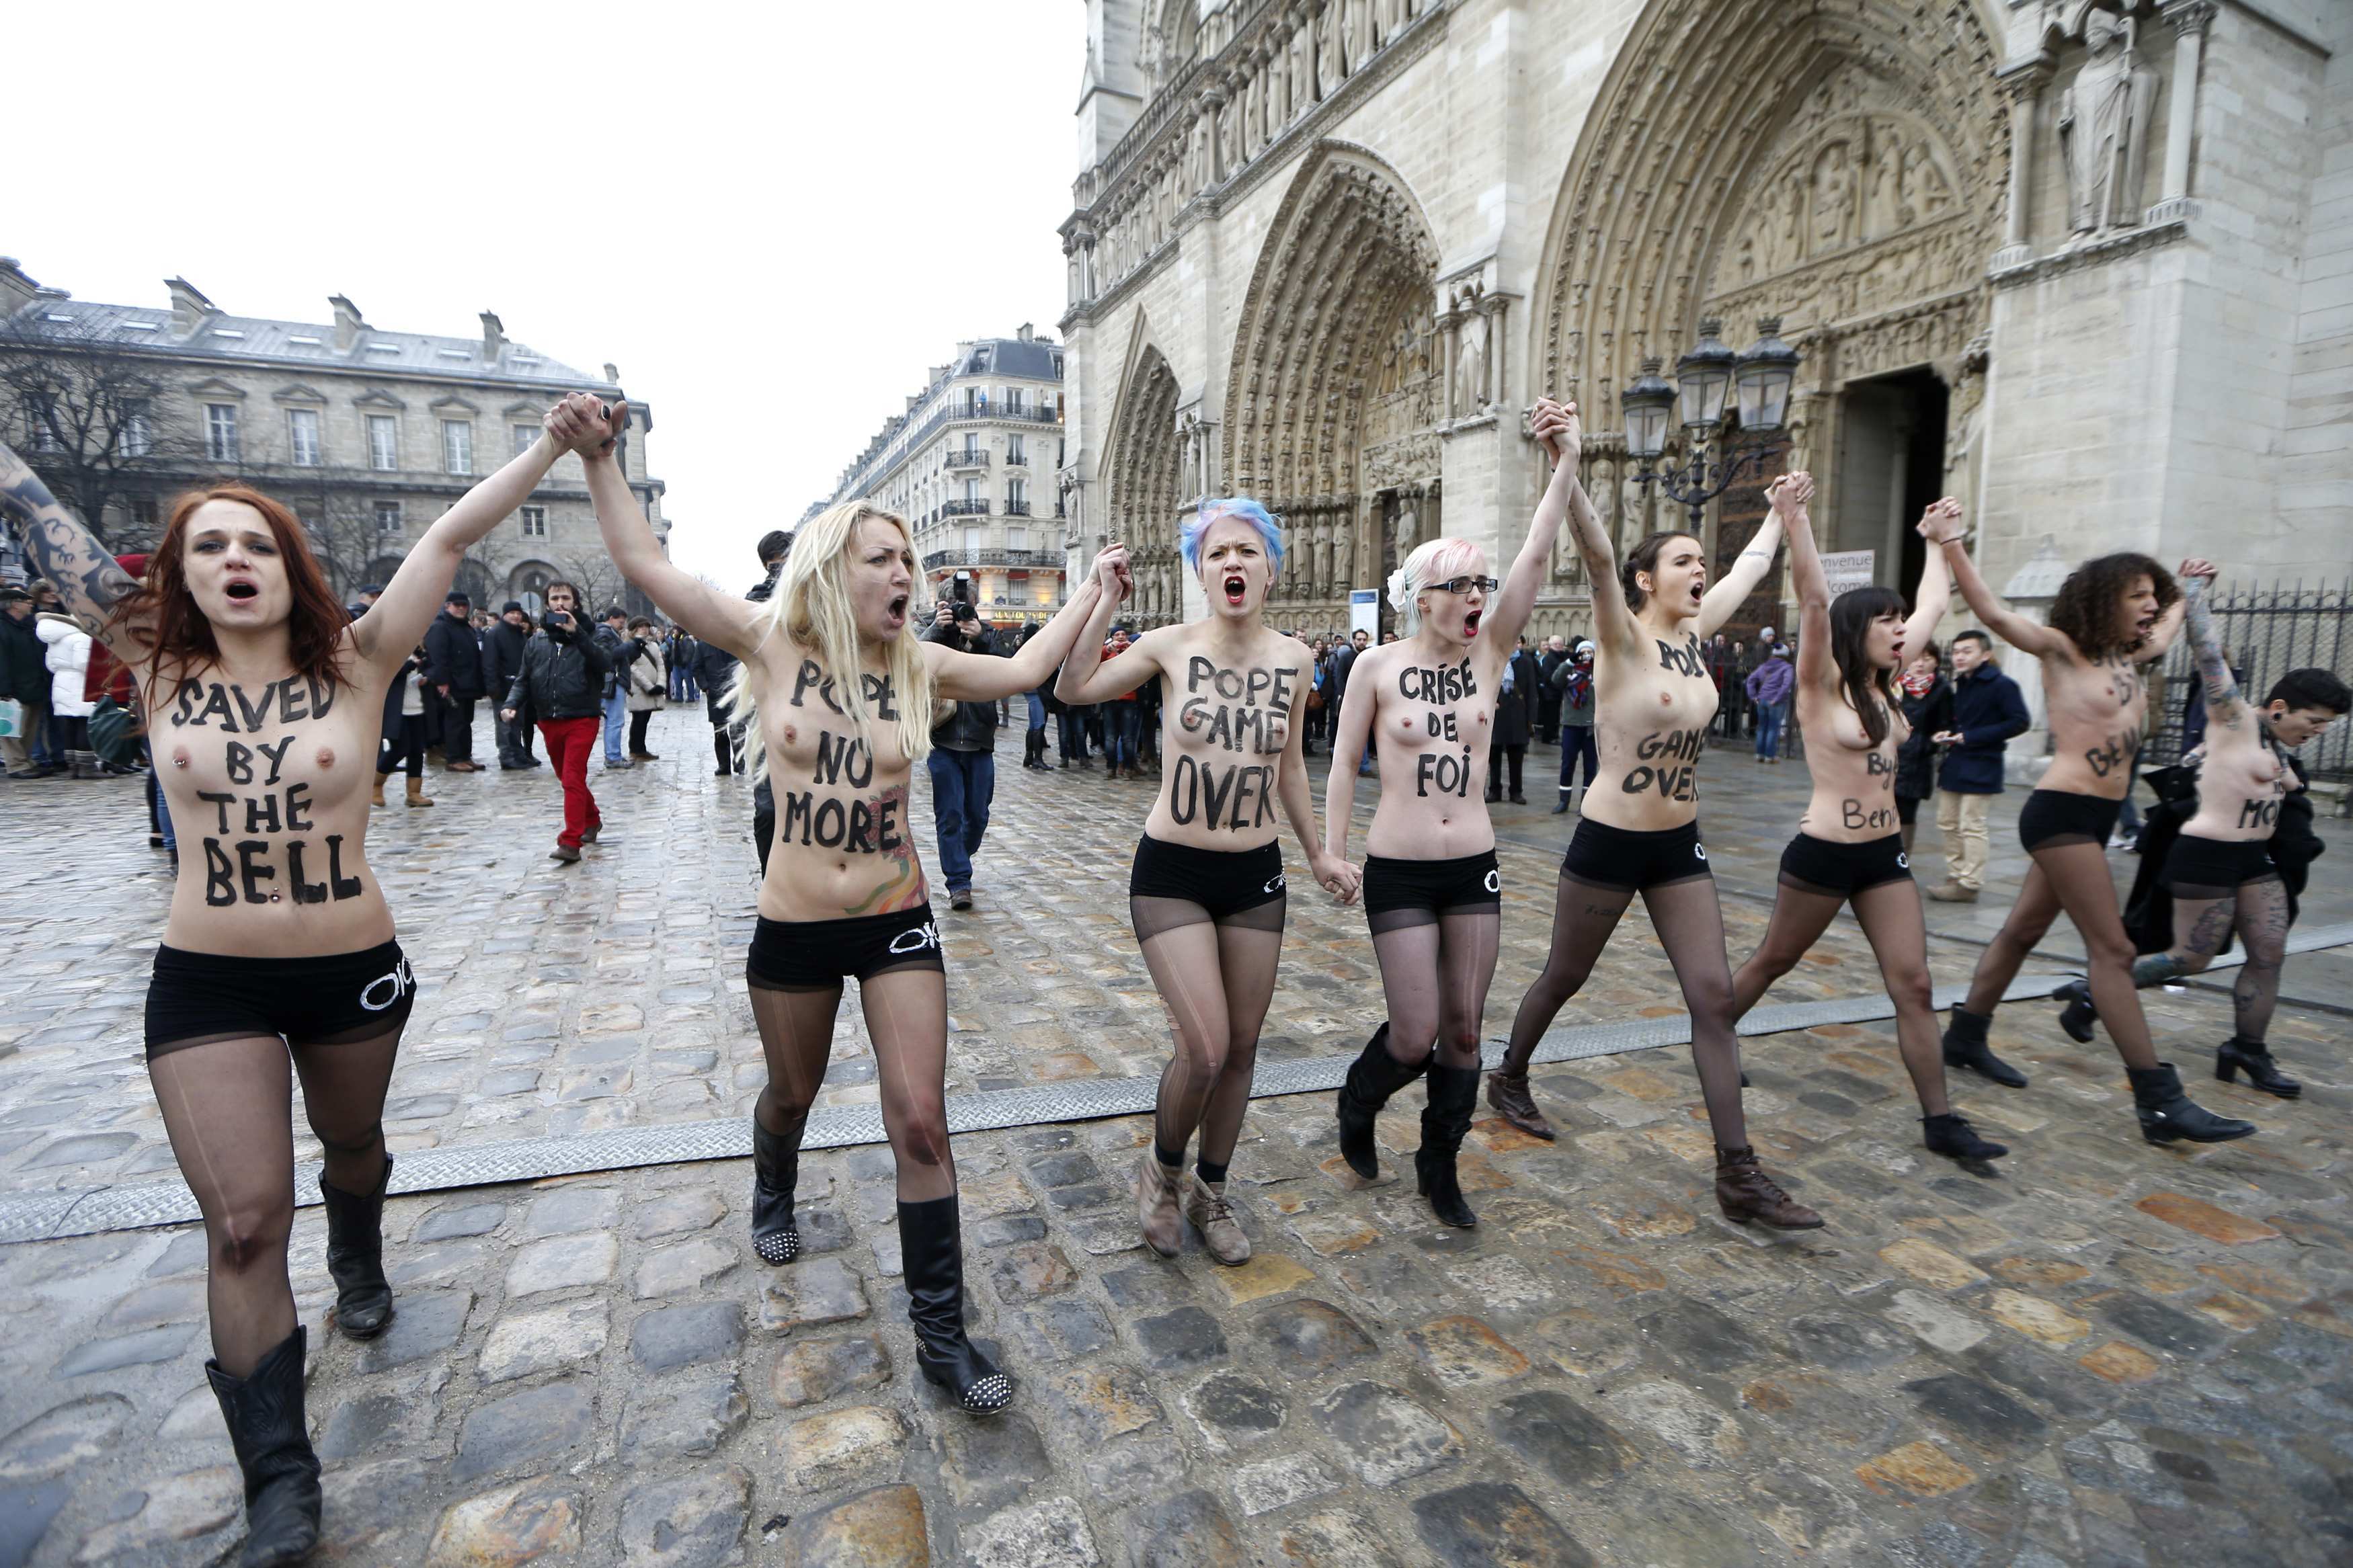 Γυμνόστηθες ακτιβίστριες εναντίον του Πάπα εισέβαλαν στη Notre Dame του Παρισιού!  Δείτε στο βίντεο τον πανικό που προκάλεσαν